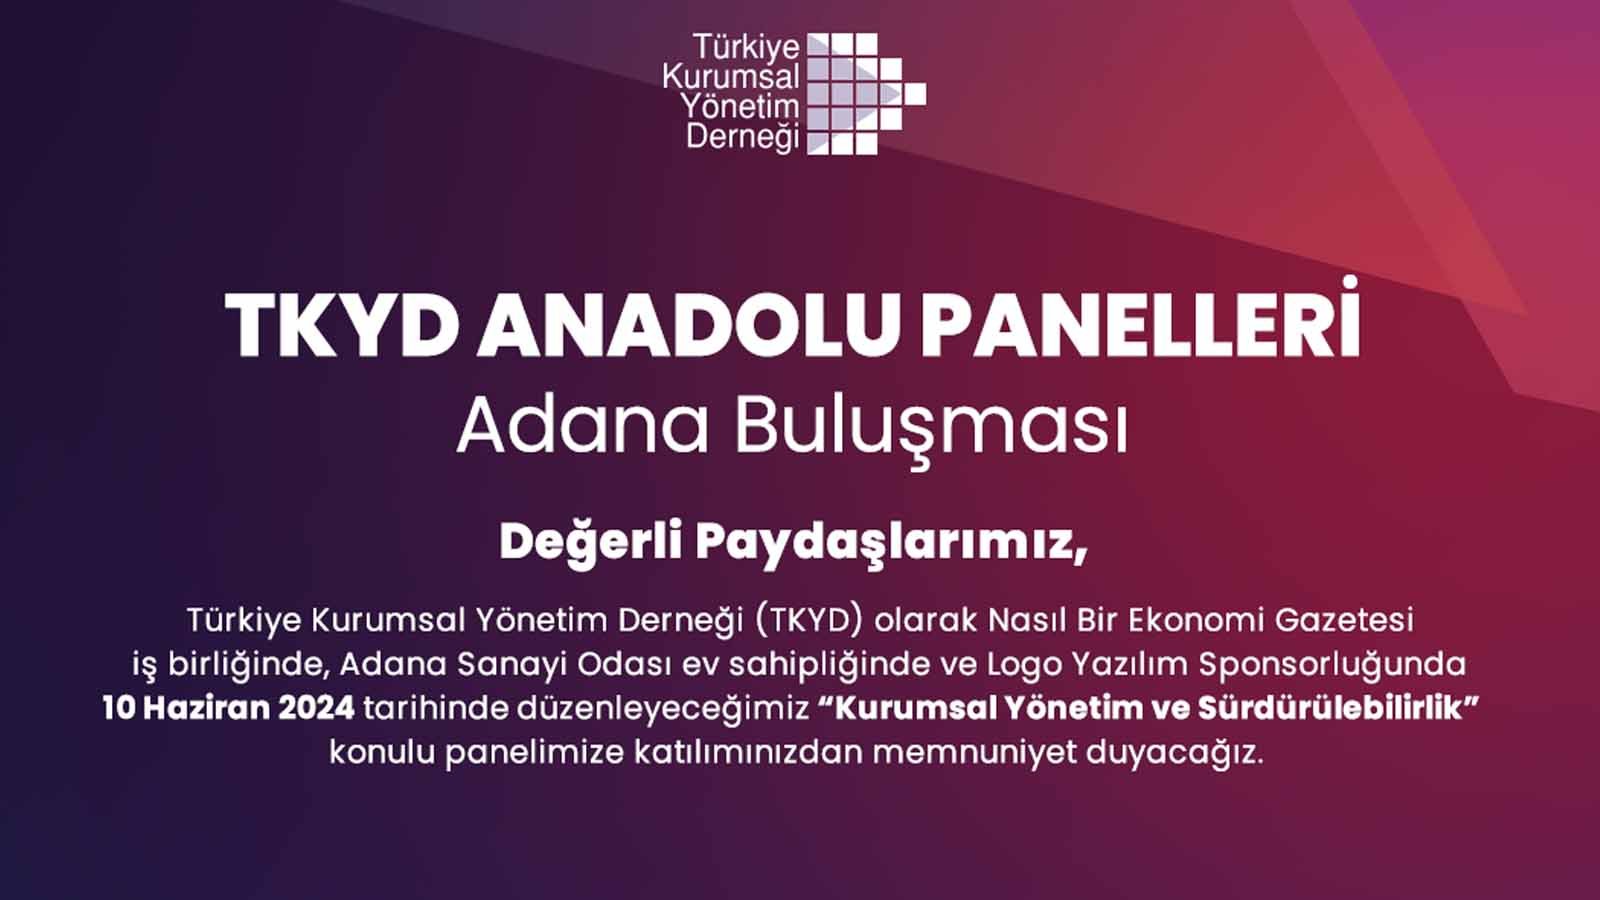 Tkyd’nin Anadolu Panelleri 10 Haziran’da Adana’da Düzenlenecek (2)